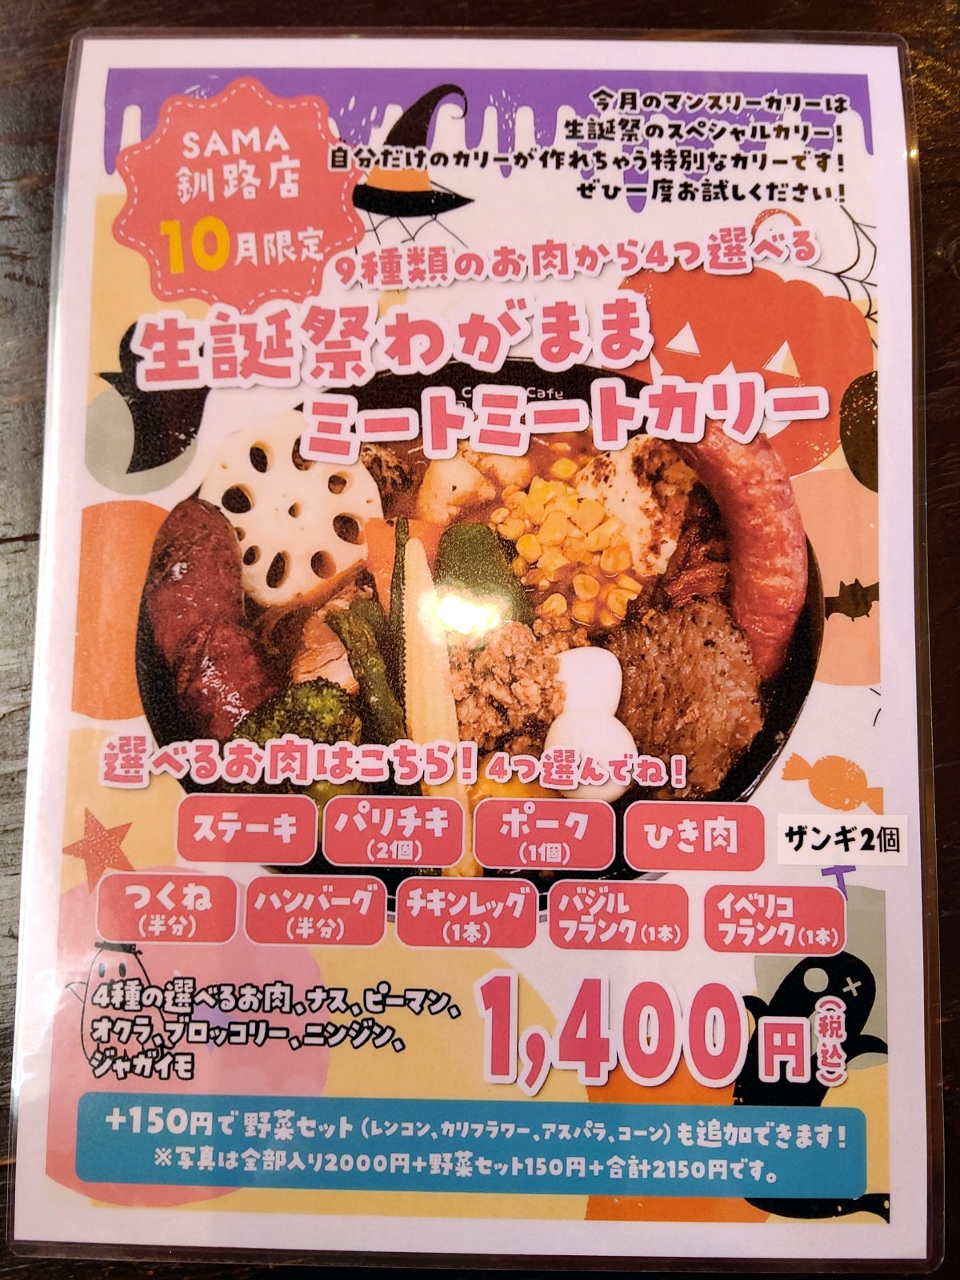 Curry & Cafe SAMA 生誕祭わがままミートミートカリー - スープカレー